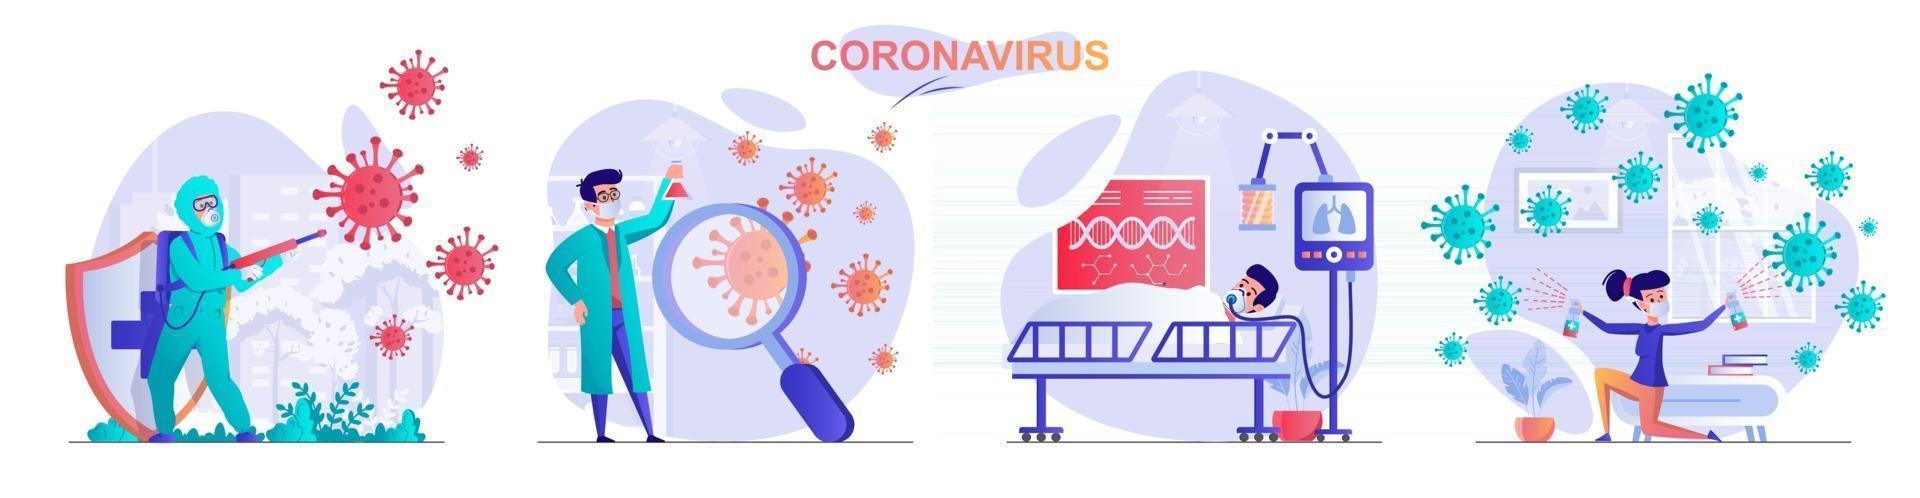 ensemble de scènes de concept de coronavirus vecteur